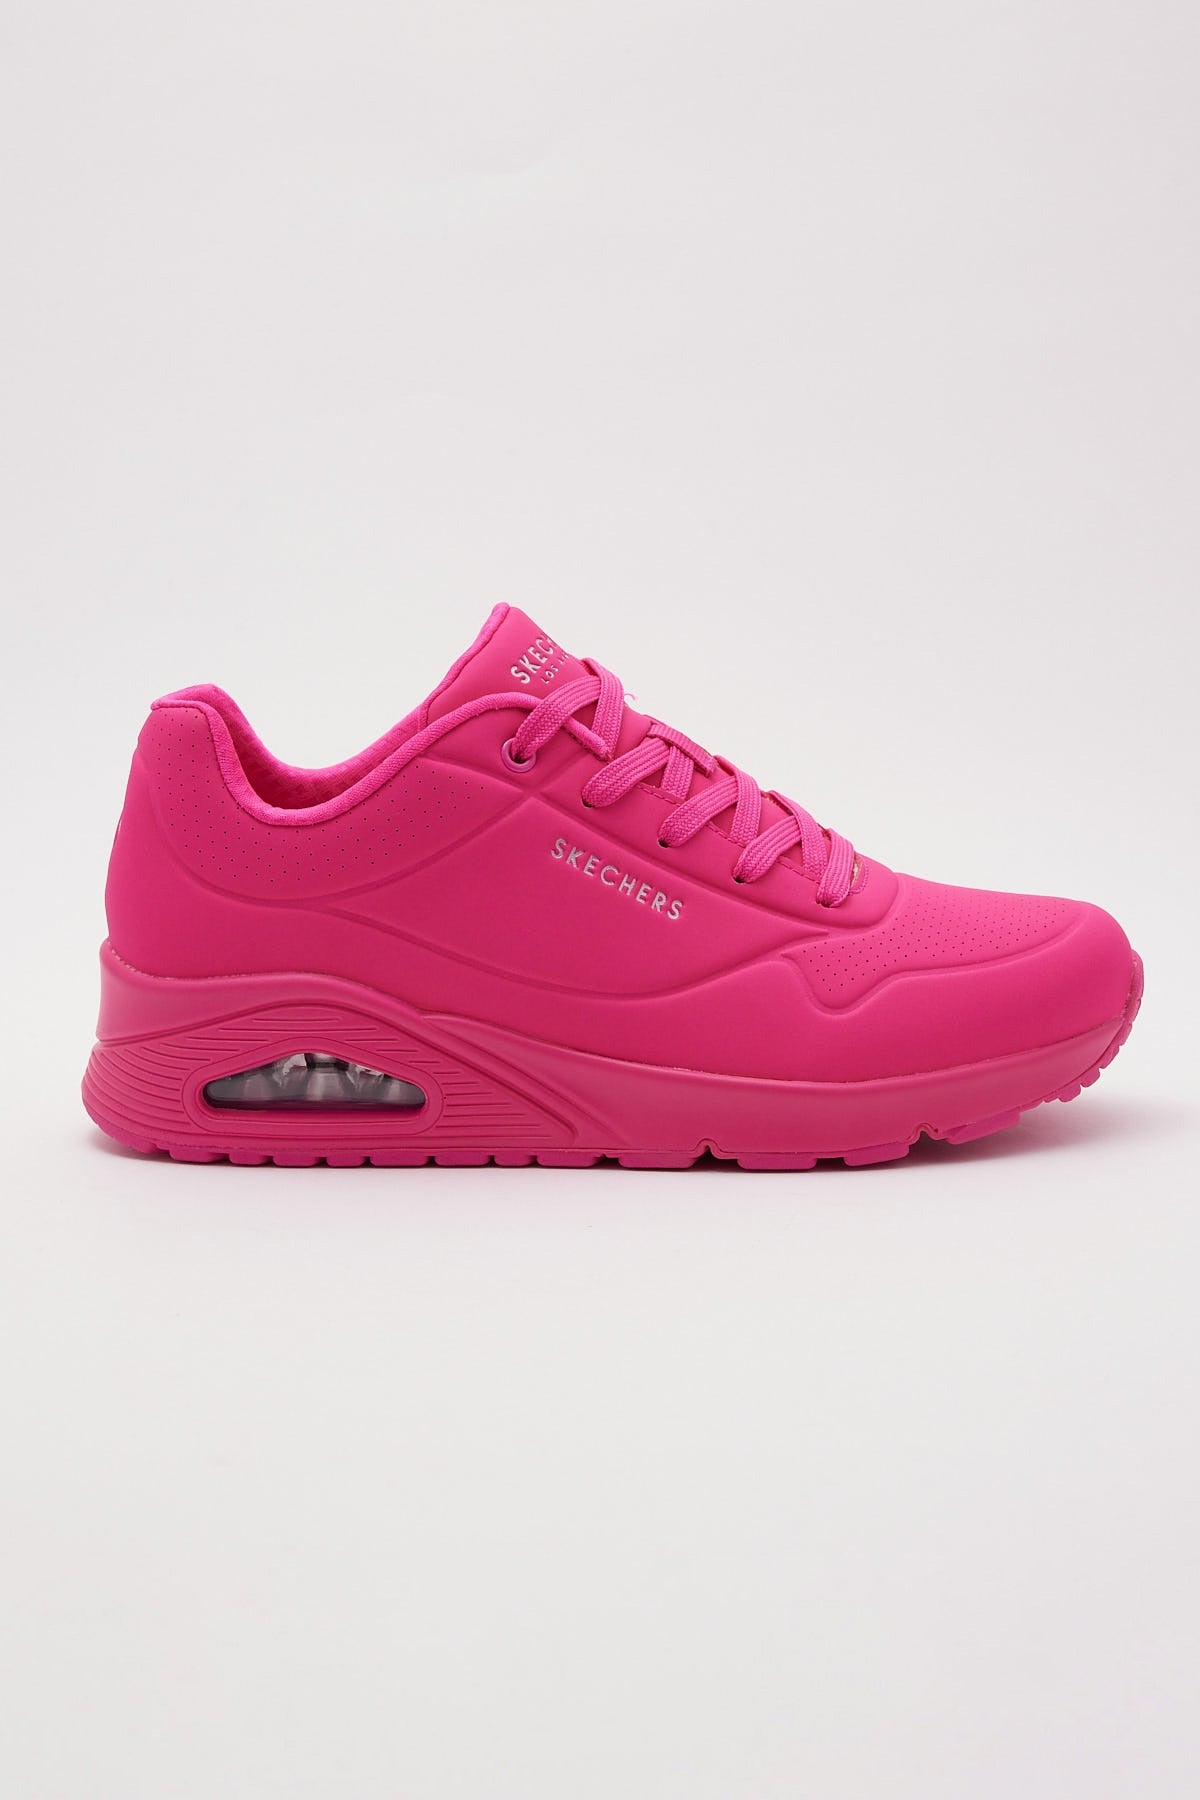 Skechers Uno Hot Pink